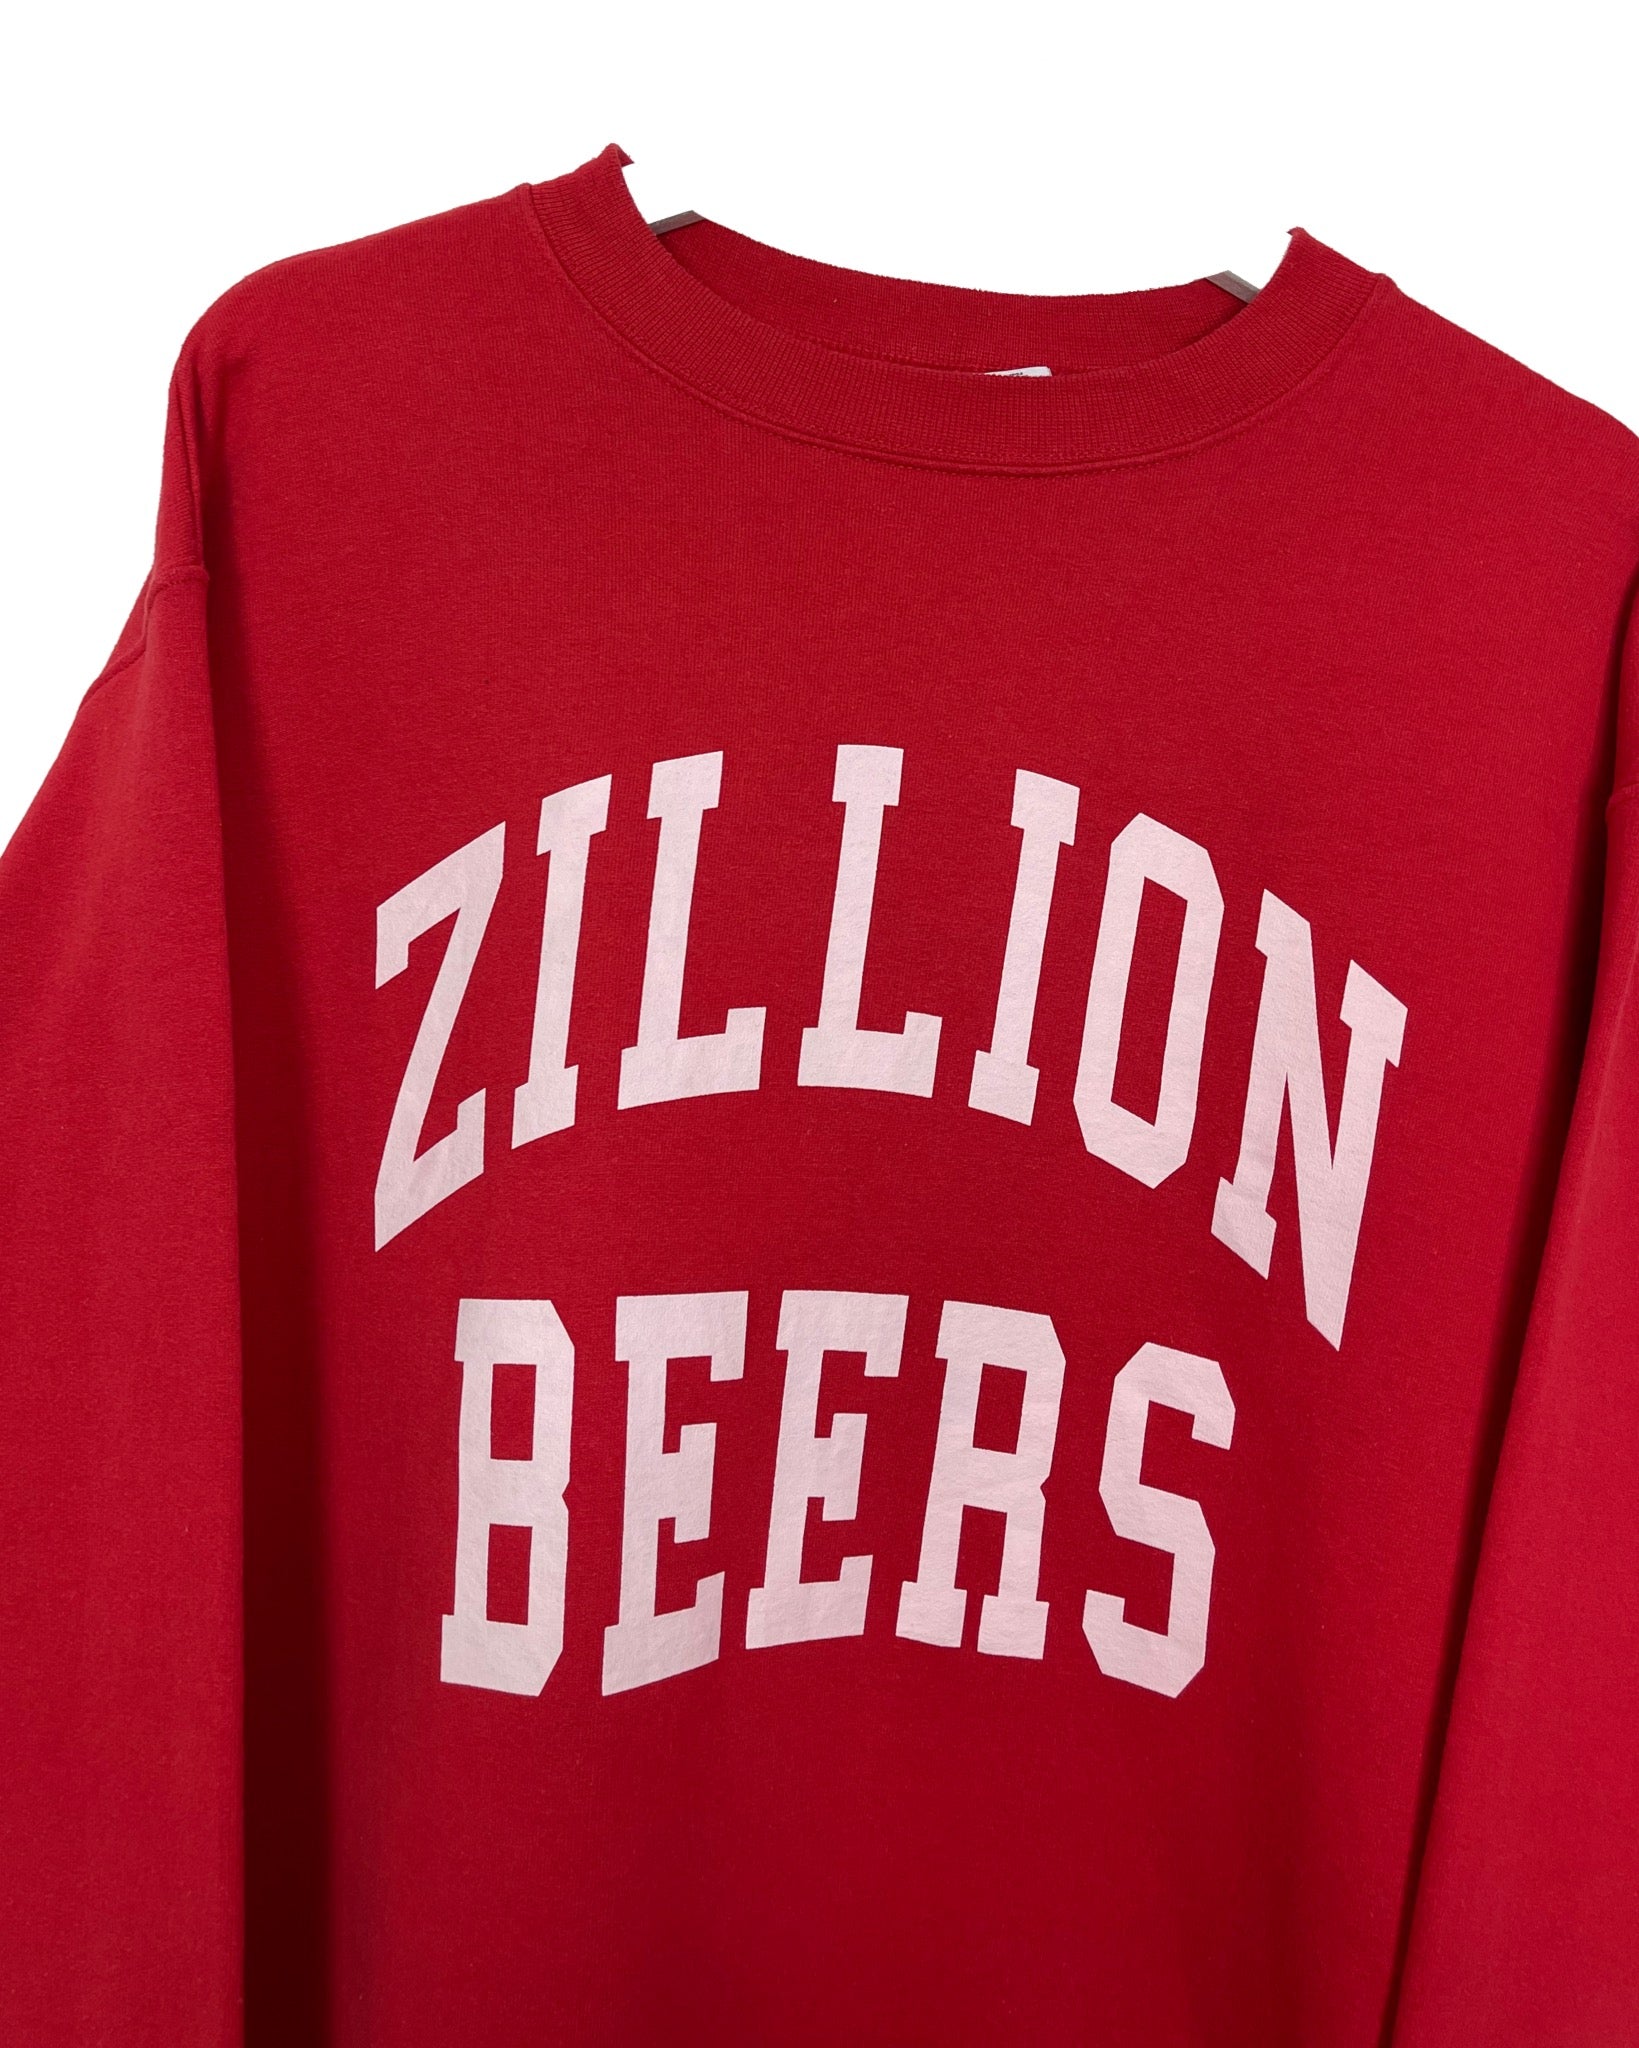  Sweatshirt Champion Sweat - Zillion Beers - M - PLOMOSTORE